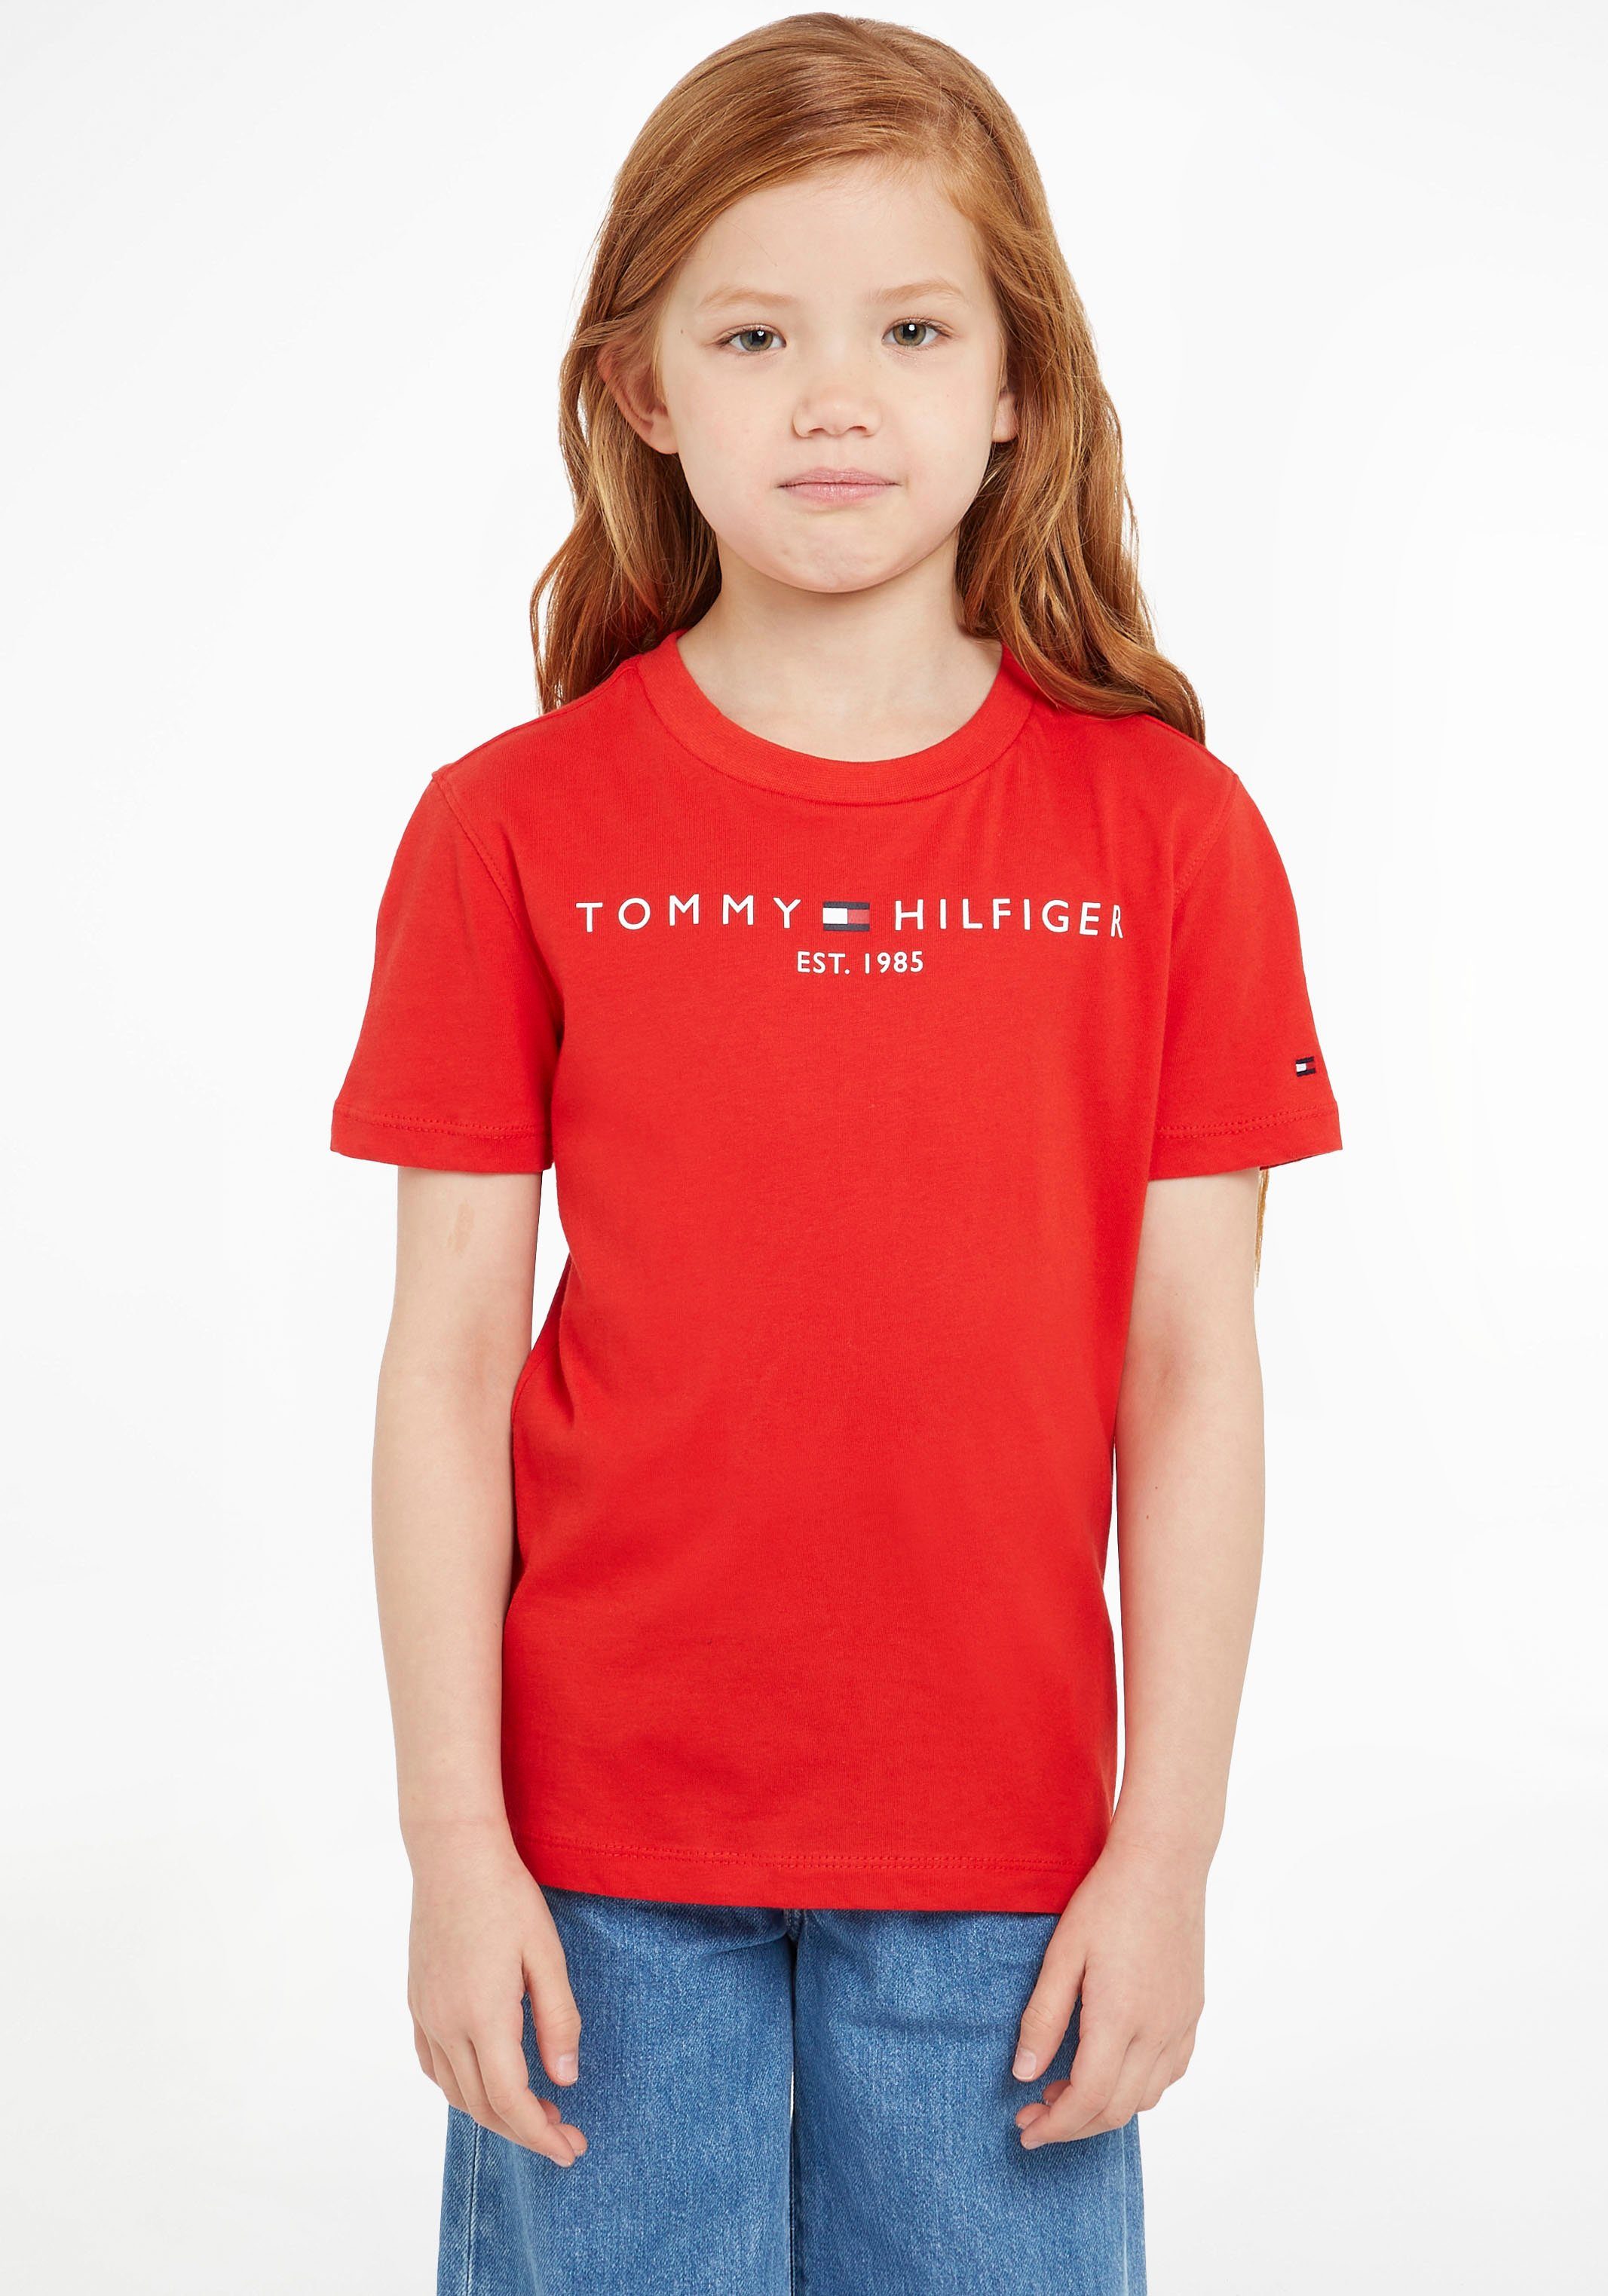 T-Shirt MiniMe,für und TEE Junior Hilfiger Tommy Jungen ESSENTIAL Kids Mädchen Kinder